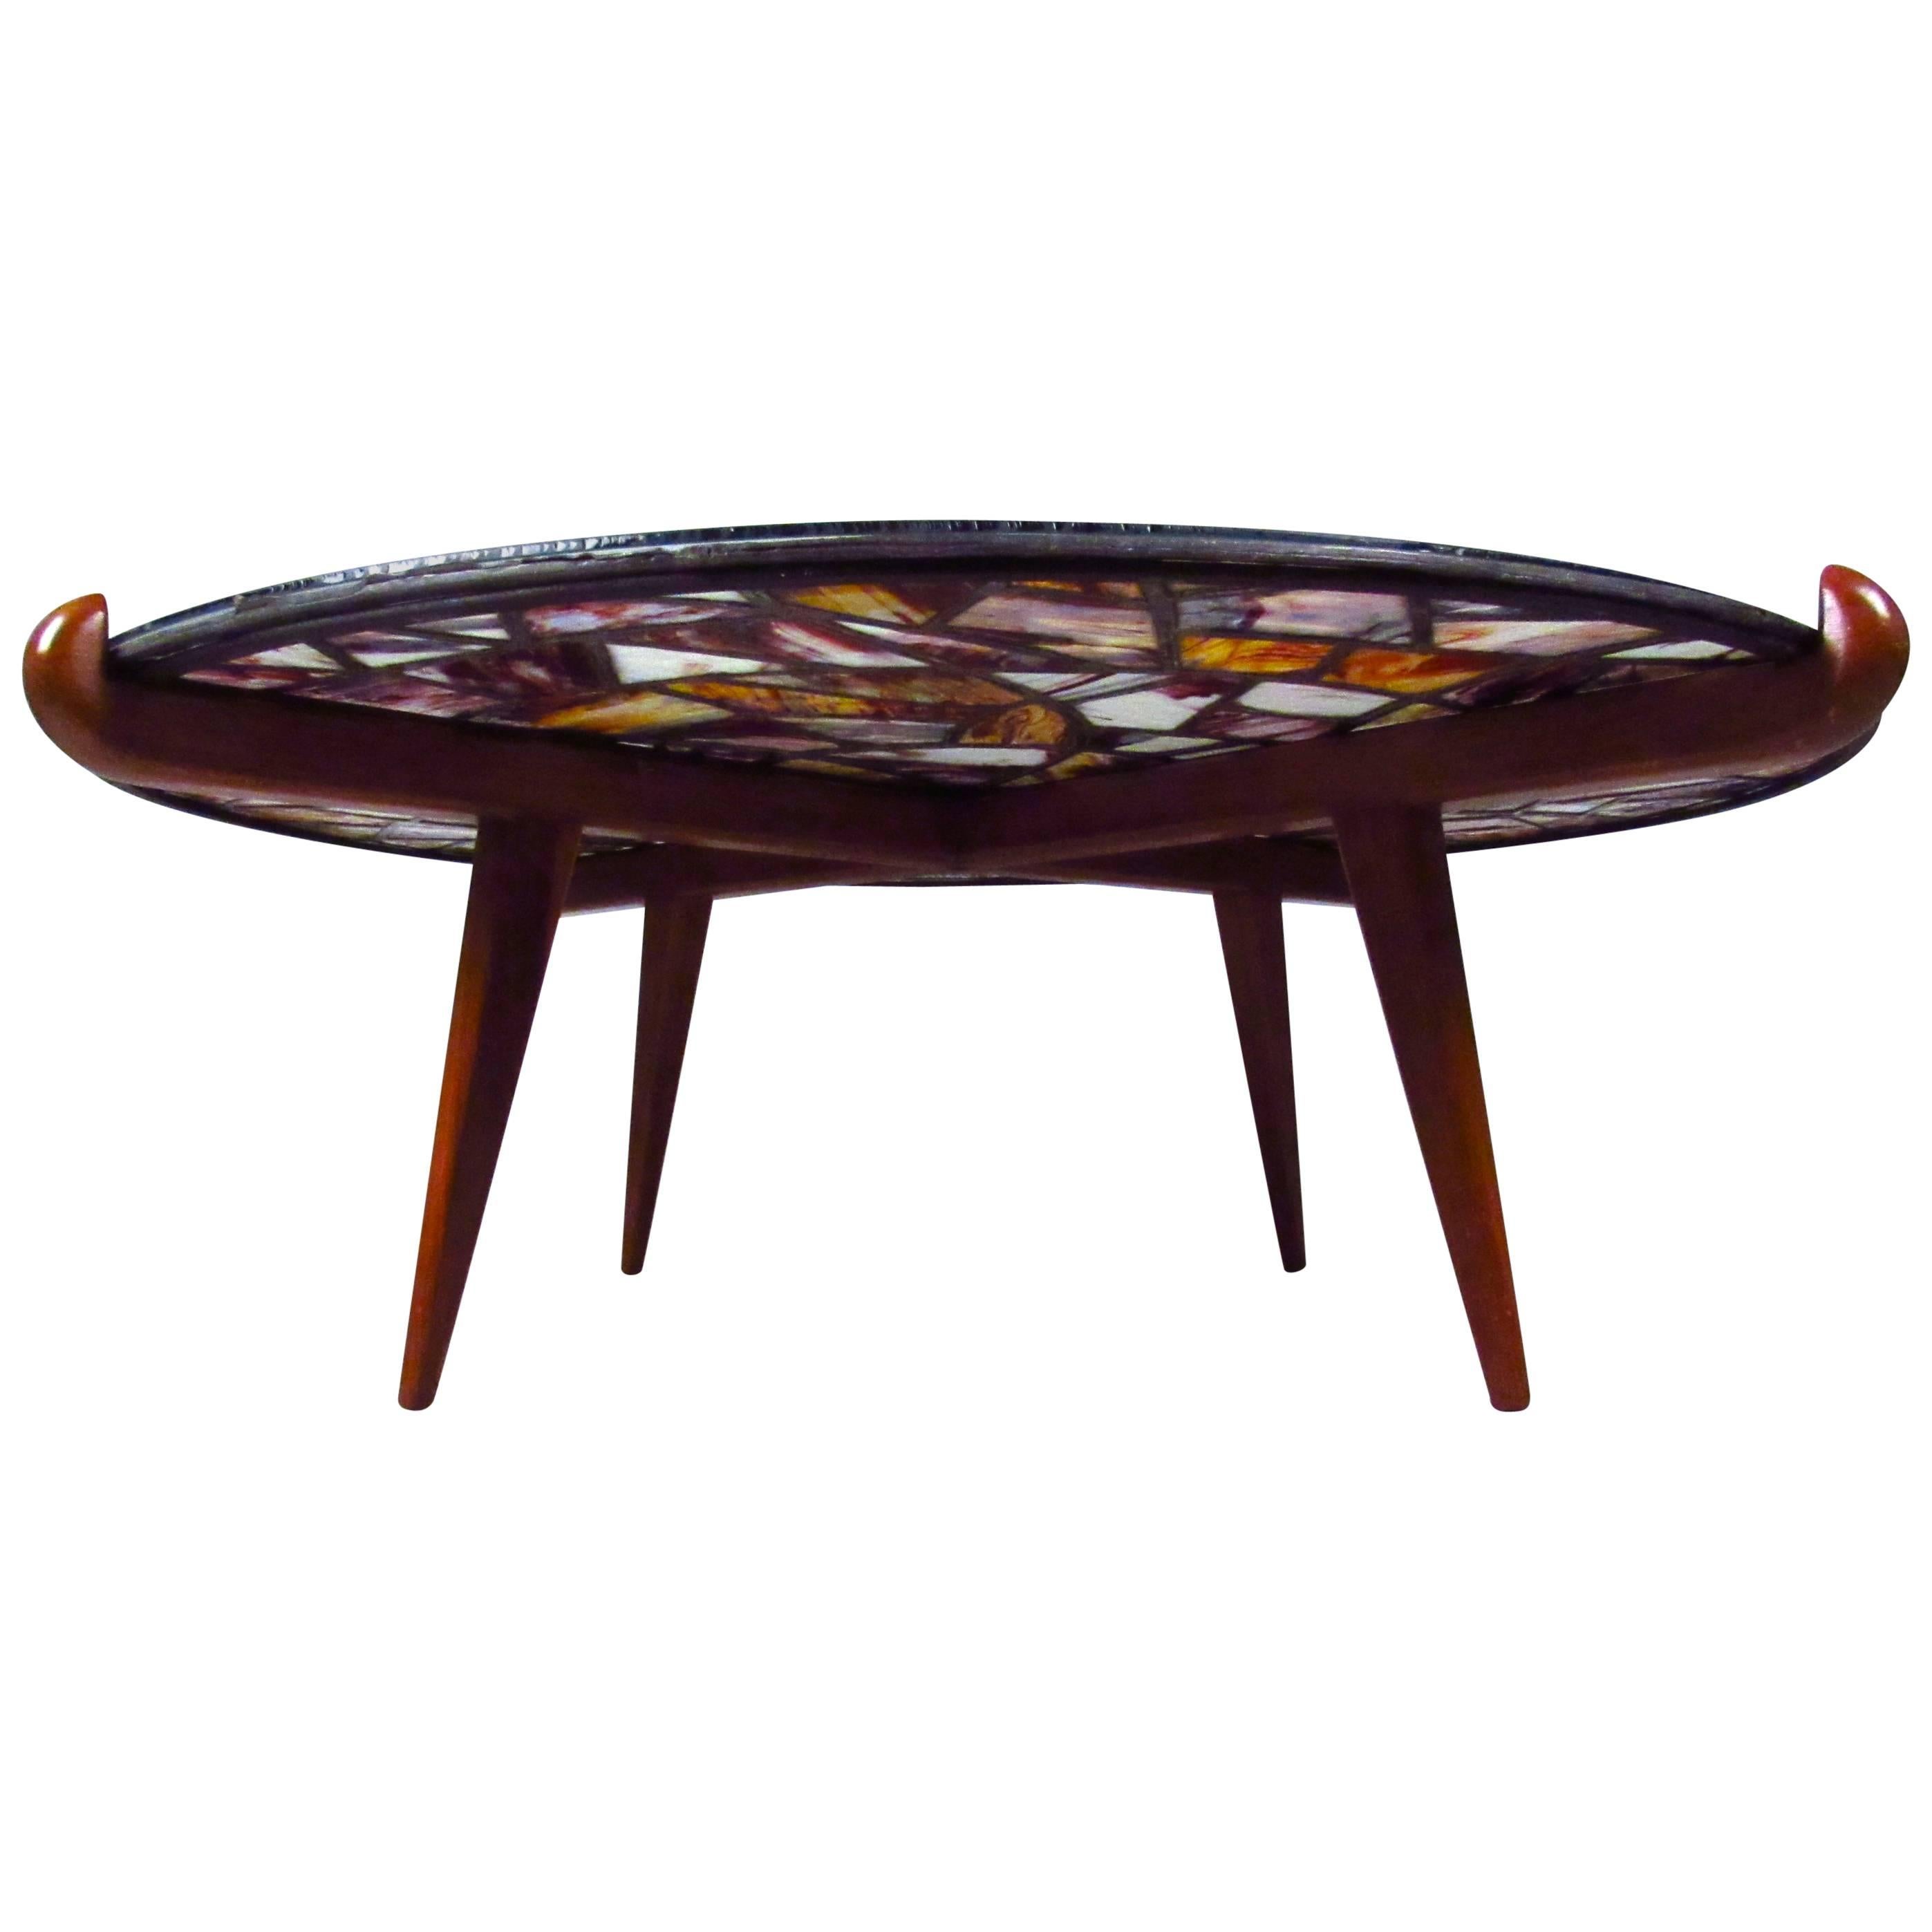 Dieser einzigartige Vintage-Tisch besteht aus einer bunten Glasmalerei und einer passenden Glasplatte, die beide in einem stilvollen, konischen Rahmen eingefasst sind. Der Sockel ist mit dem Zeichen des Handwerkers Walker Weed aus New Hampshire